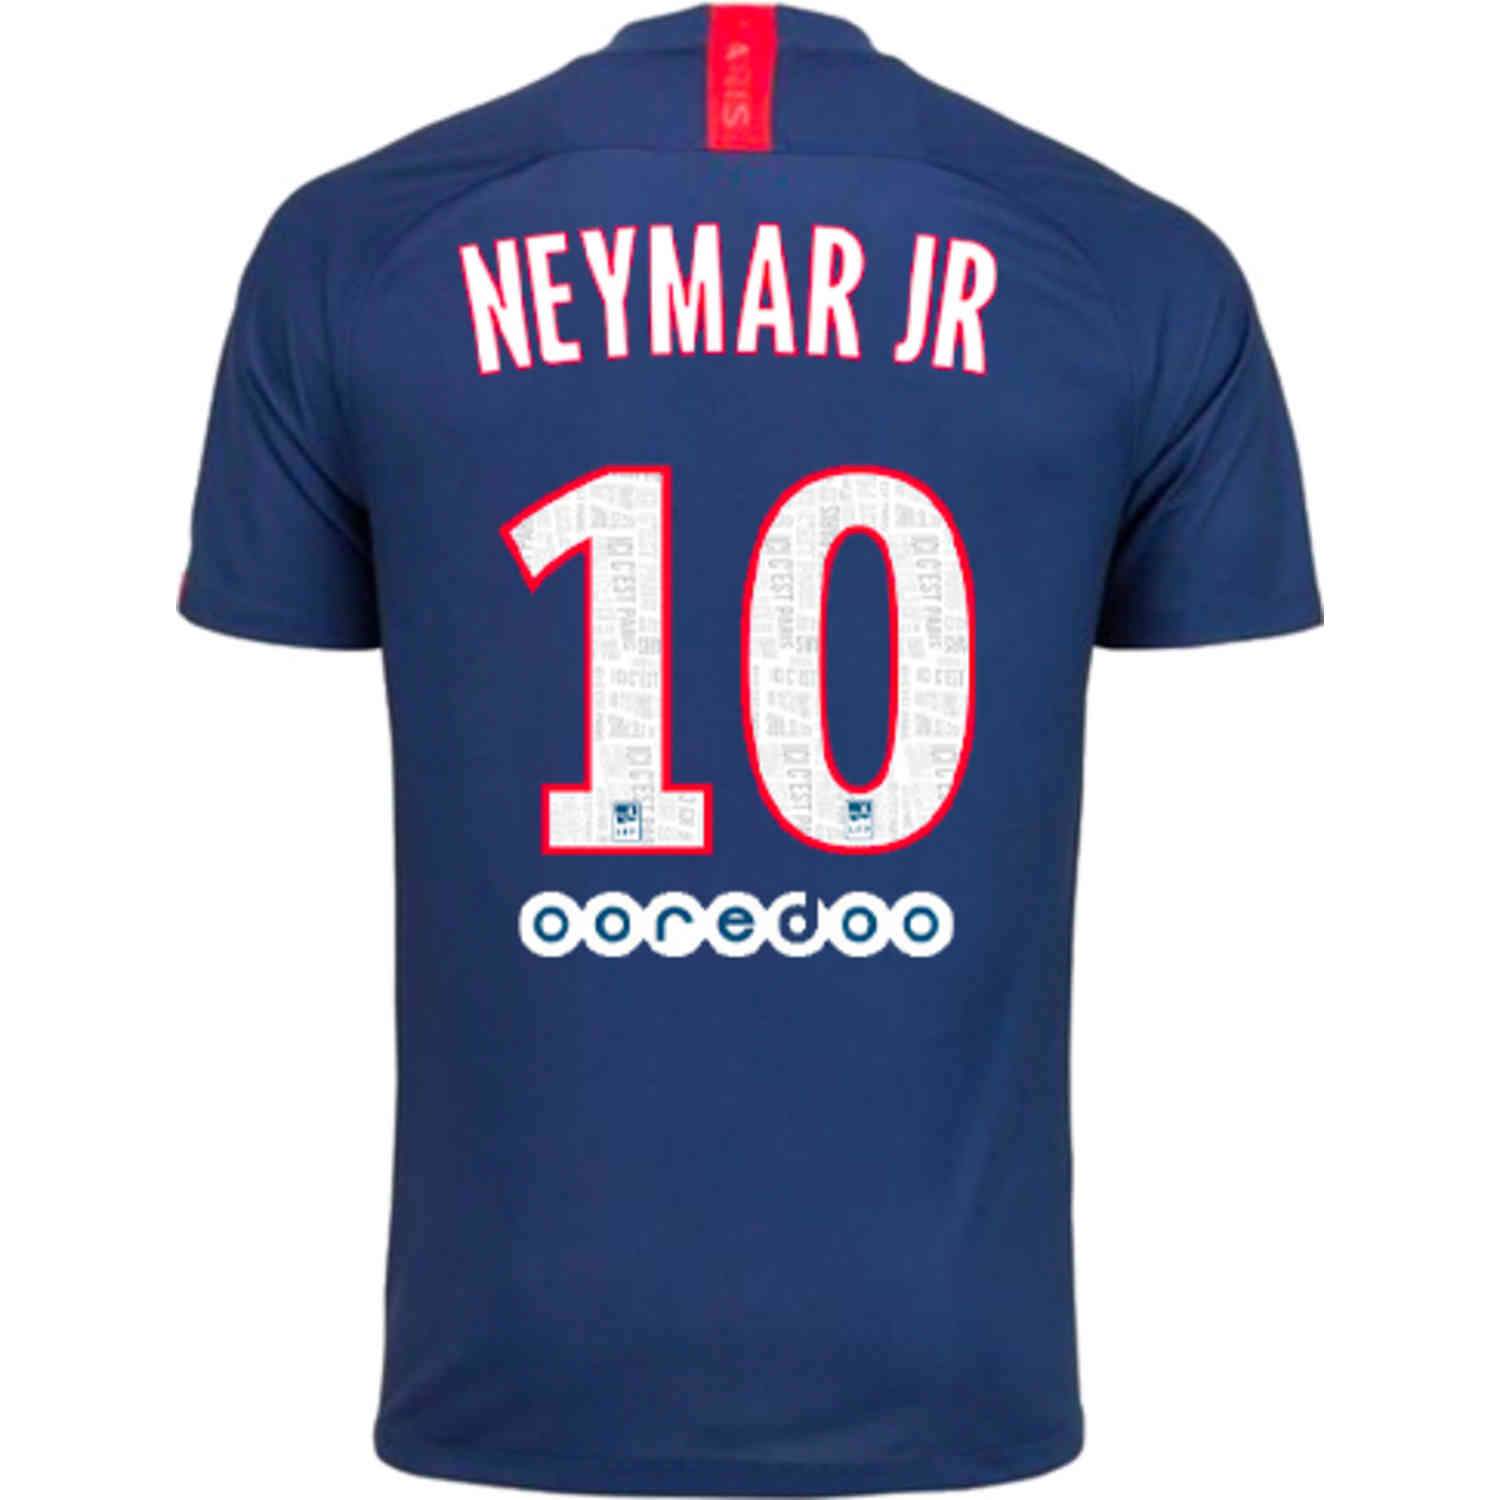 neymar jr jersey